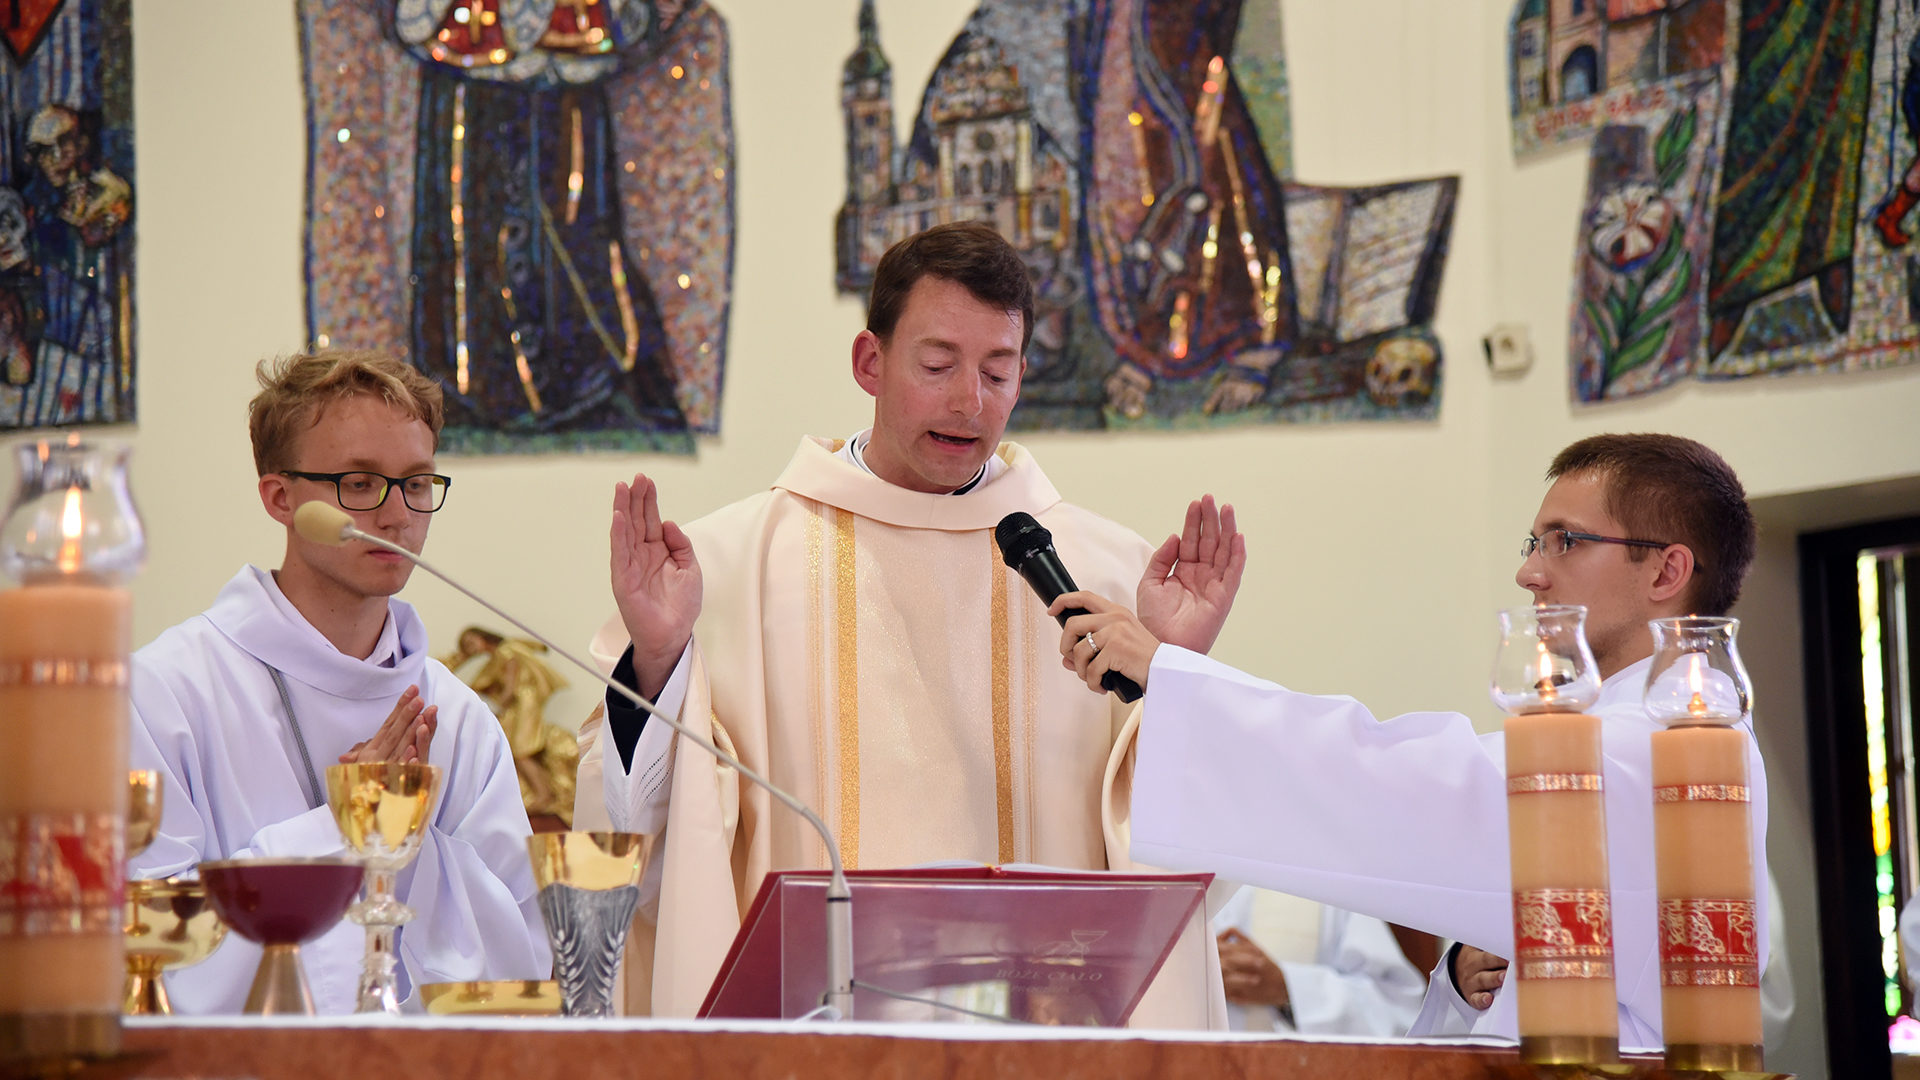 L'abbé Jean Glasson, curé d'Estavayer-le-Lac, lors de la messe des JMJ, le 27 juillet 2016 à la paroisse Saint-Wojciech à Cracovie. (Photo: P.Pistoletti)